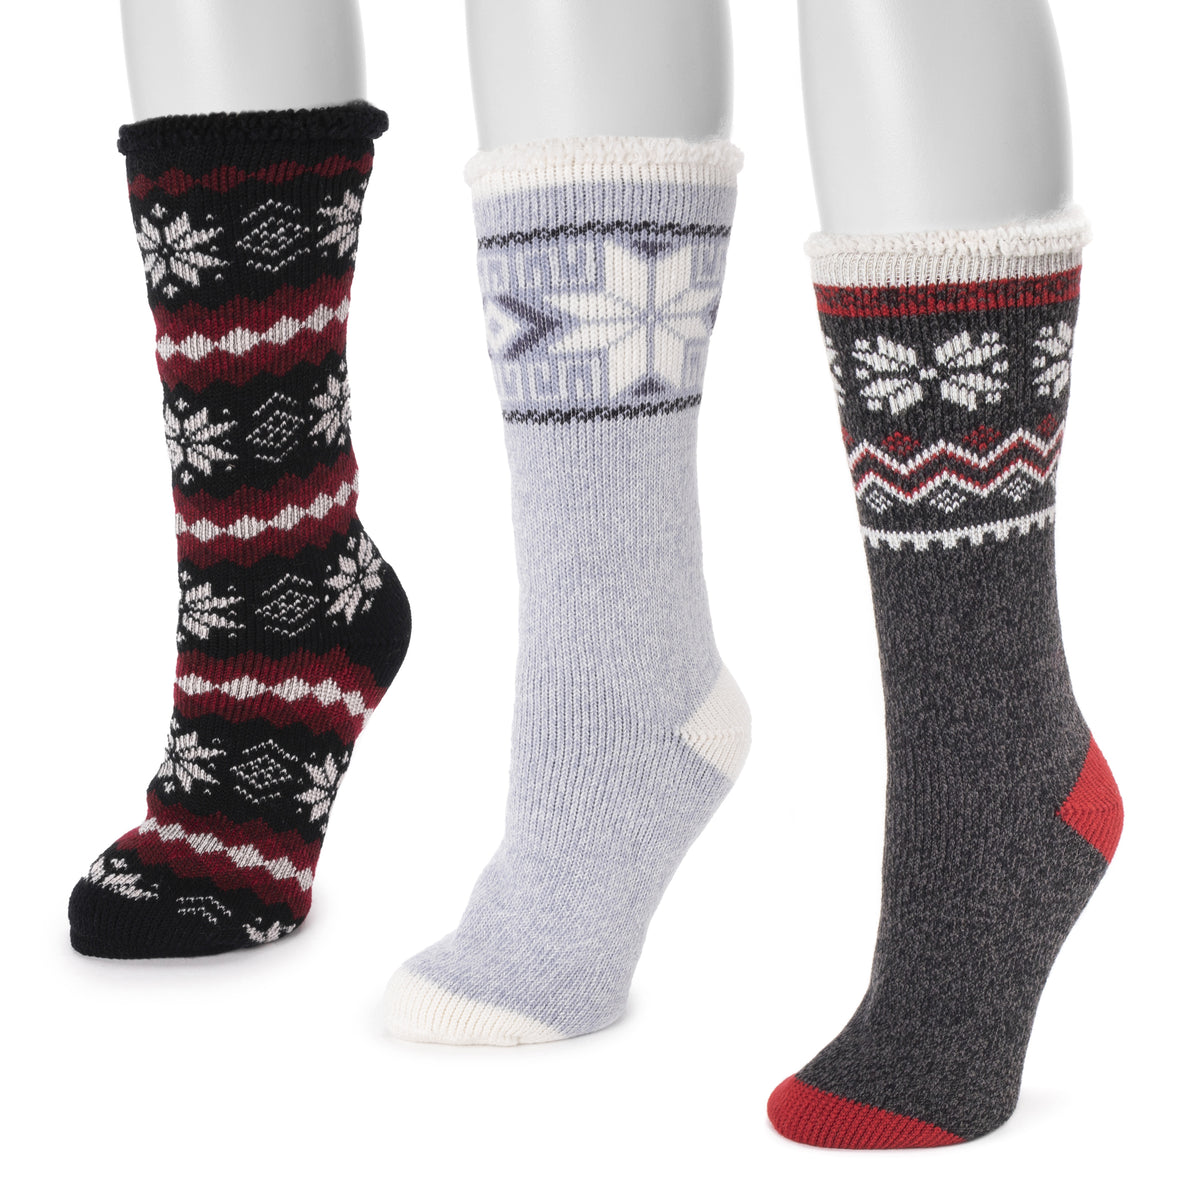 MUK LUKS Cuff Slipper Sock with Anti-Skid Sole - 9271715